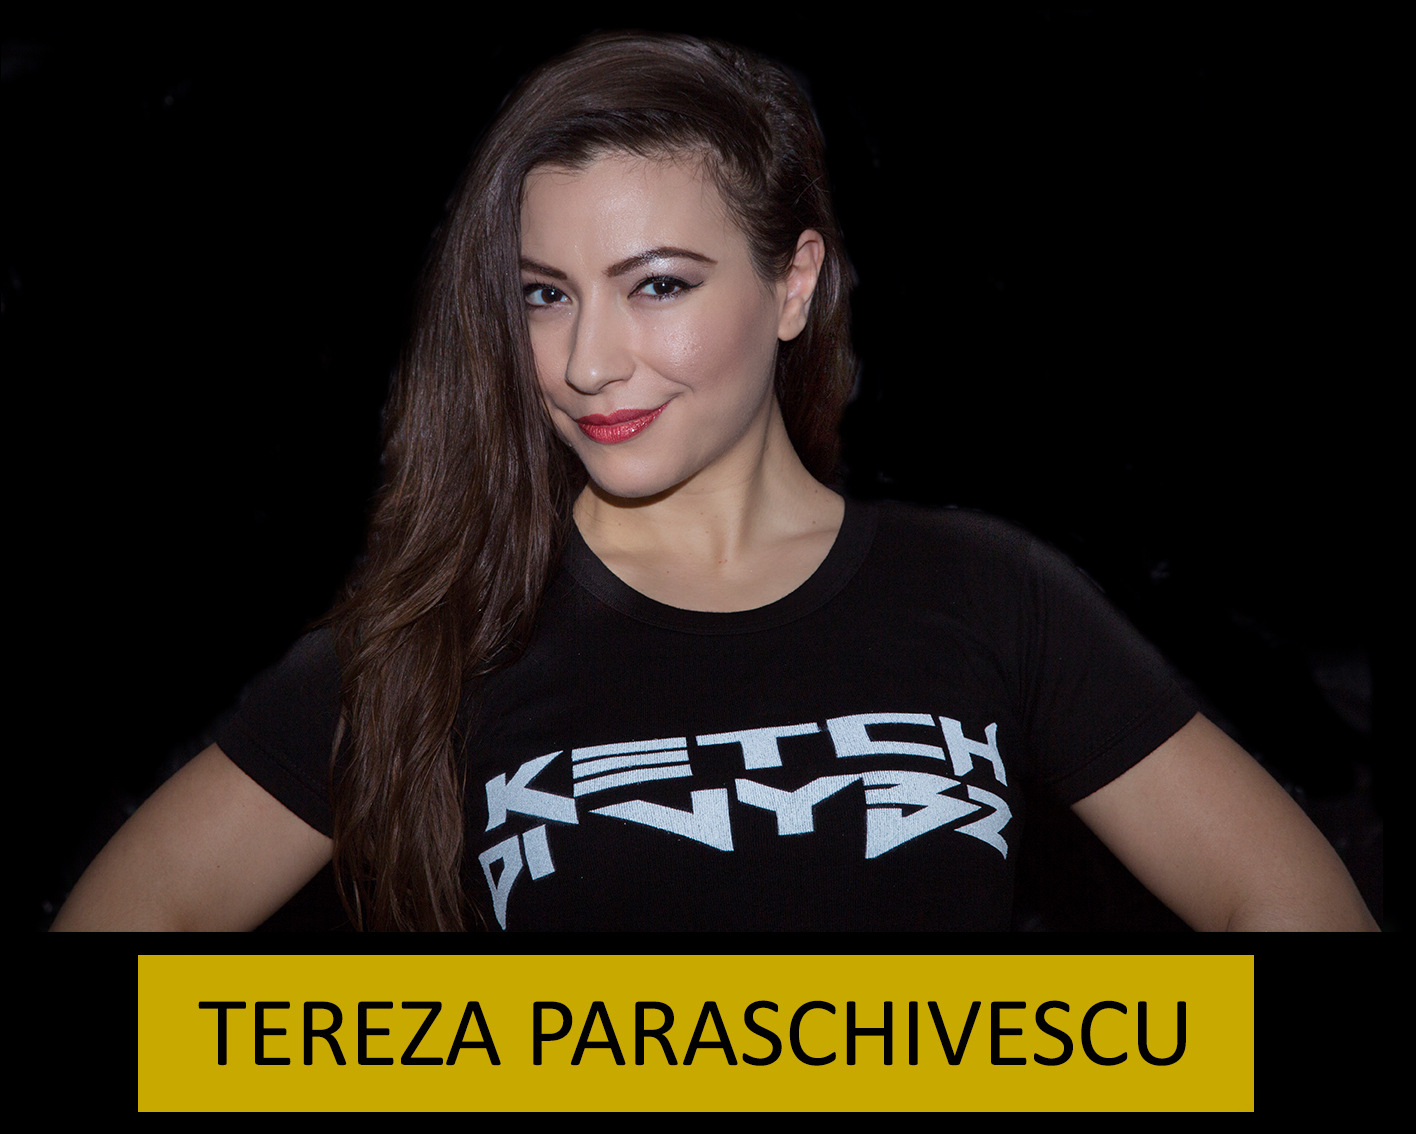 Click to read bio: Tereza